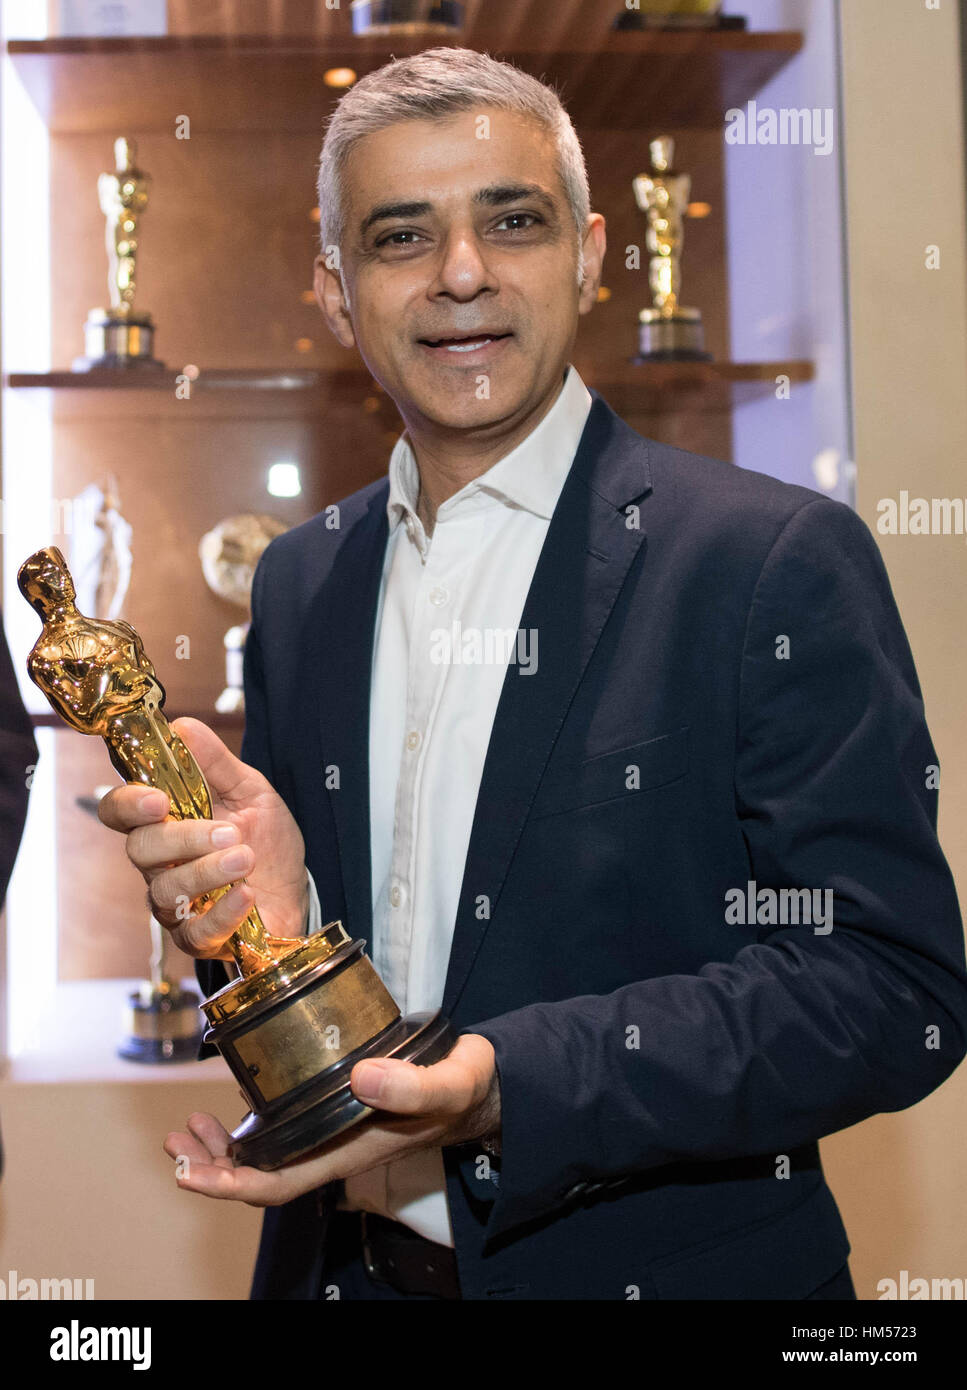 Maire de Londres Sadiq Khan est titulaire d'un 'Oscar' décerné à la société d'effets spéciaux Double Negative, lors d'une visite à la ferme dans le centre de Londres, pour discuter de l'industrie du cinéma de la capitale. Banque D'Images